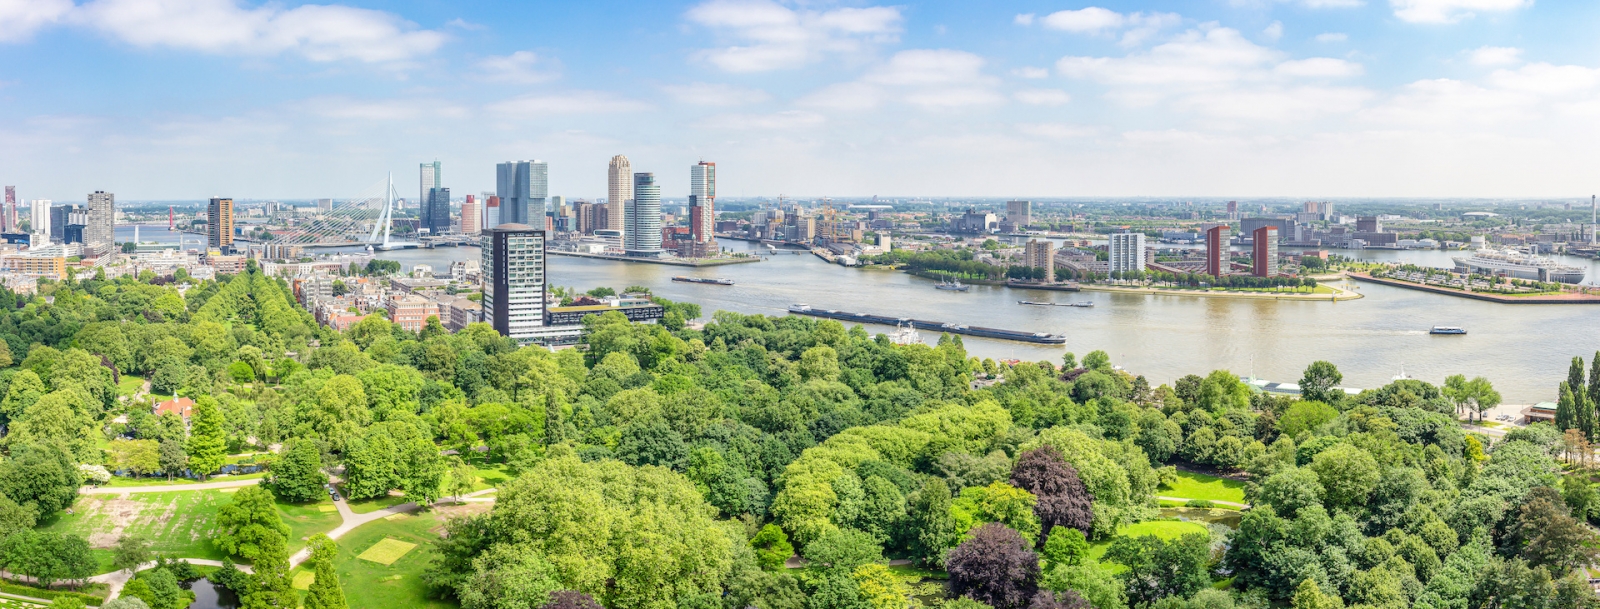 Panoramablick auf Rotterdam mit der Maas und der Erasmusbrücke, dem Park am Euromast, den Gebäuden am Kreuzfahrtterminal und dem Hotel New York, Katendrecht mit SS Rotterdam